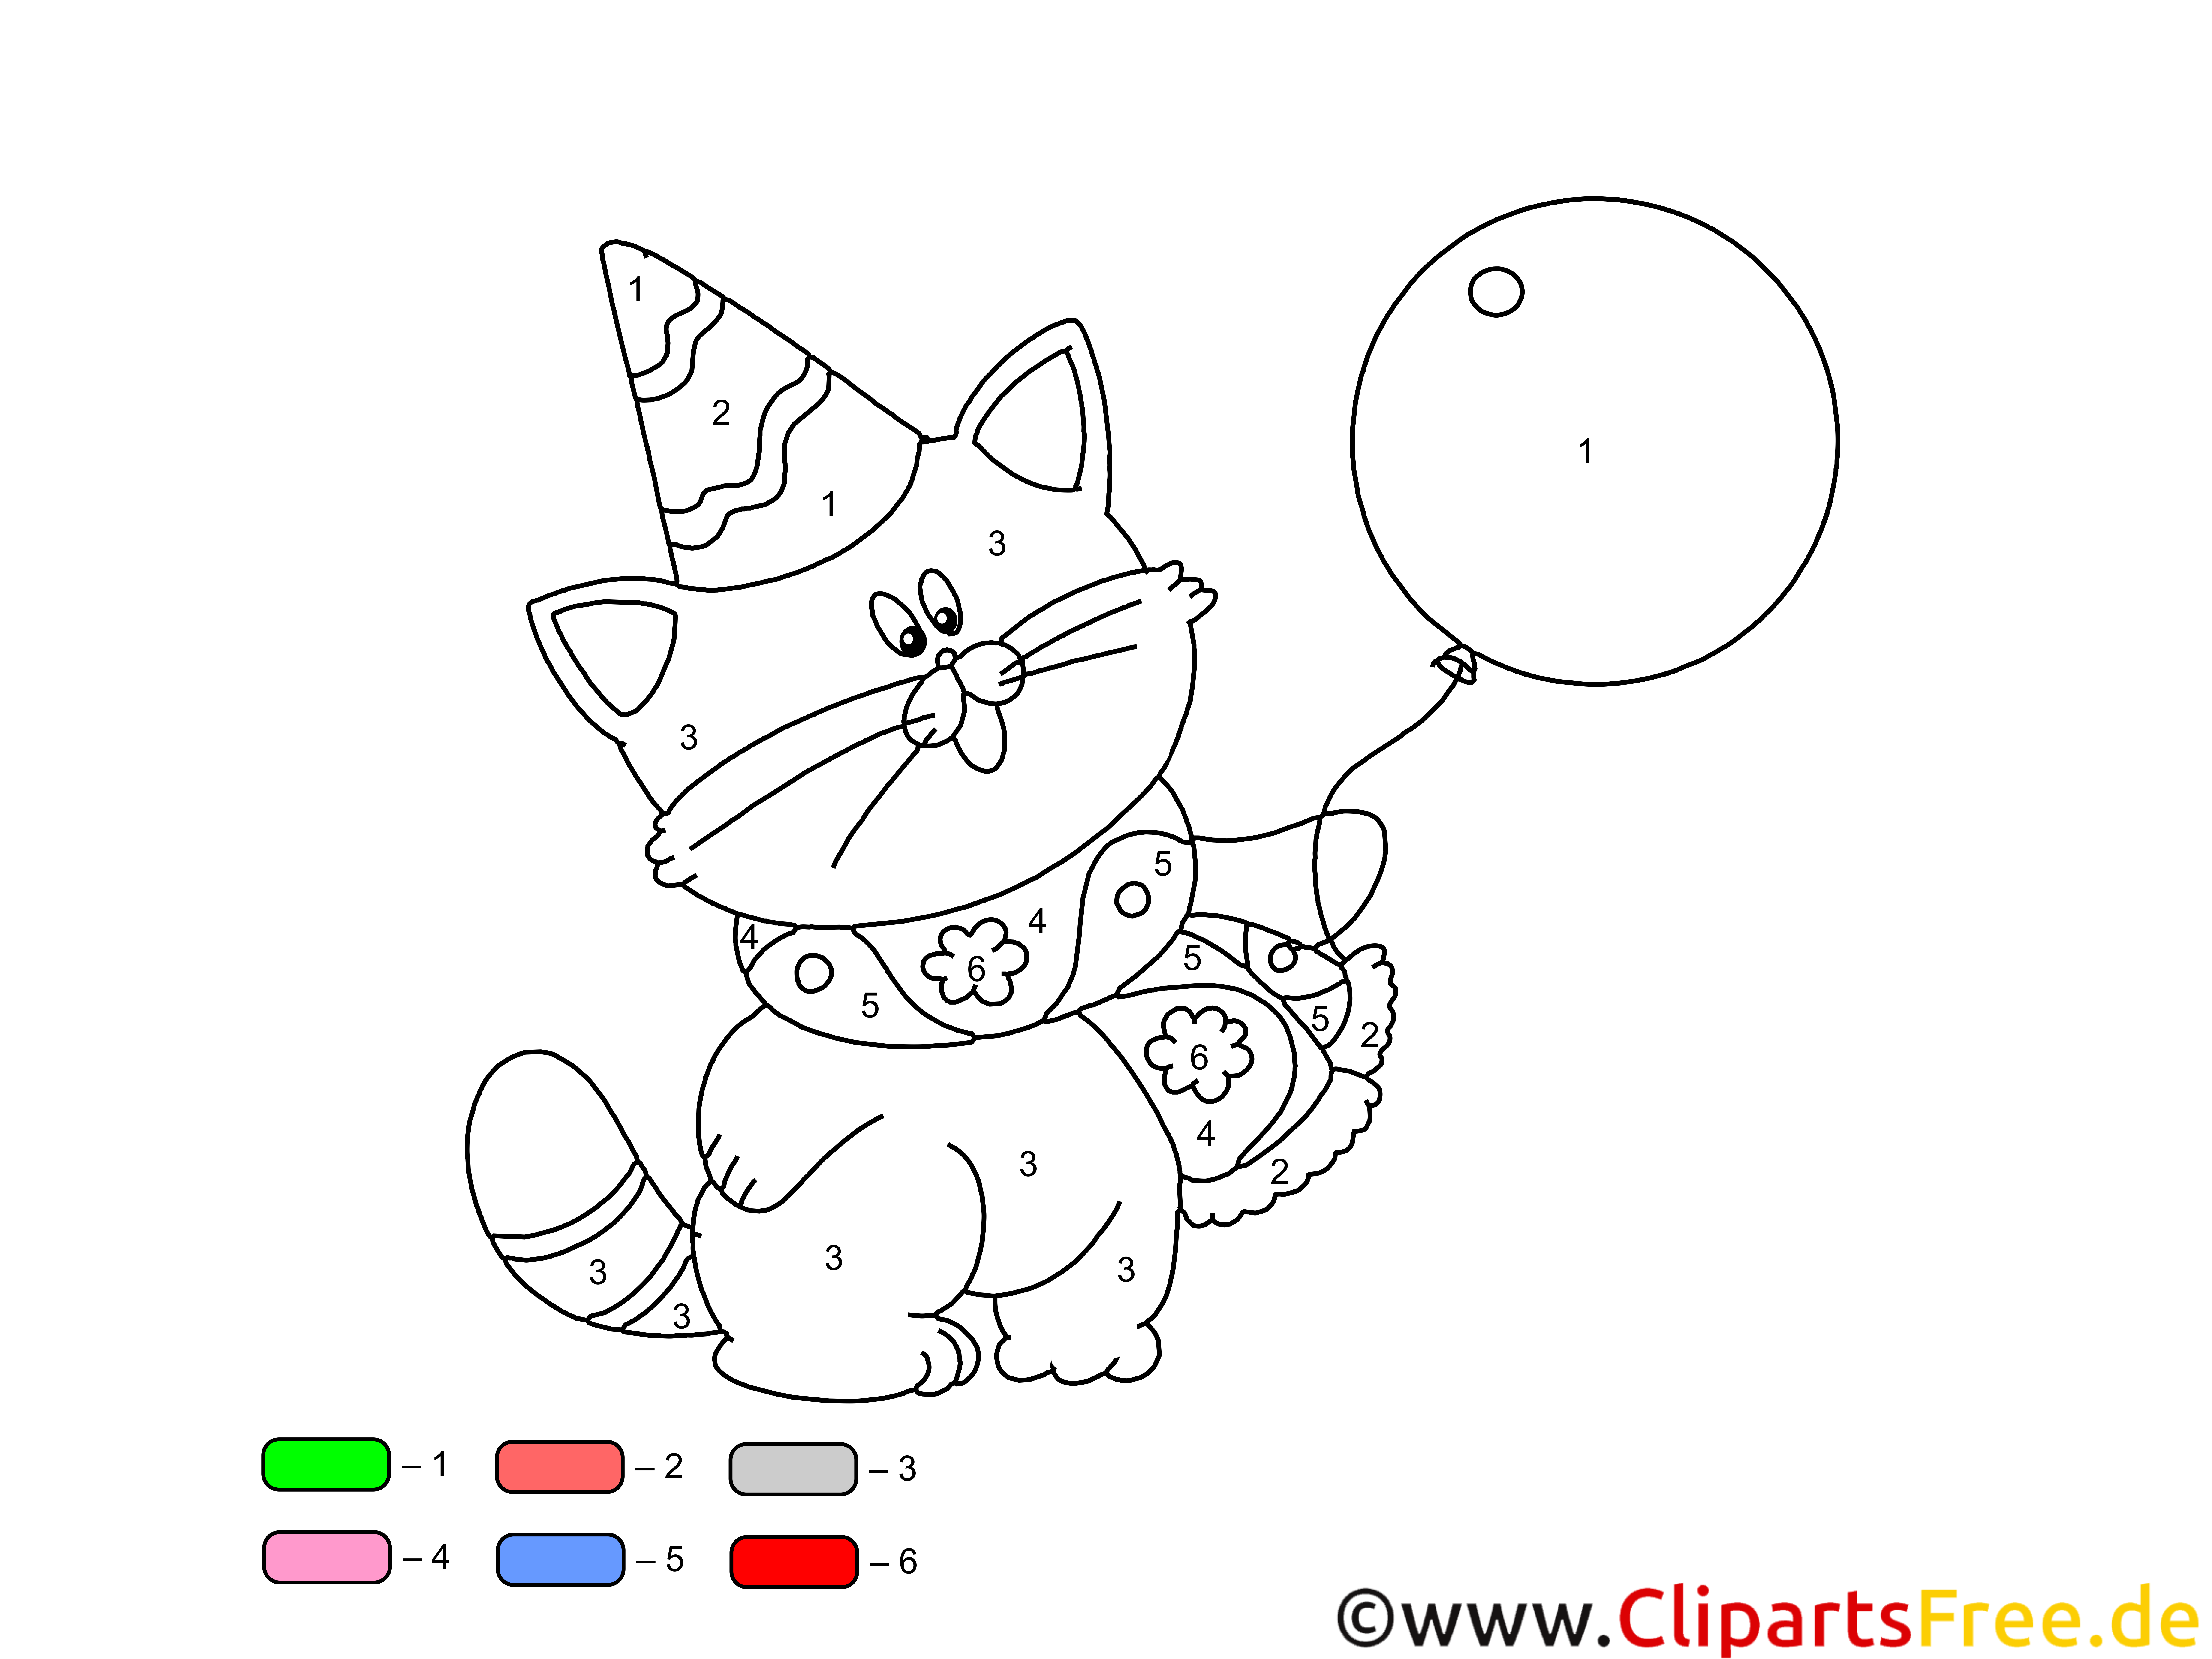 Кошка с шариками рисование средняя группа. Раскраска по номерам для детей кот. Раскраска. Котики. Раскраска по цифрам котик. Раскраска котик с шариками.